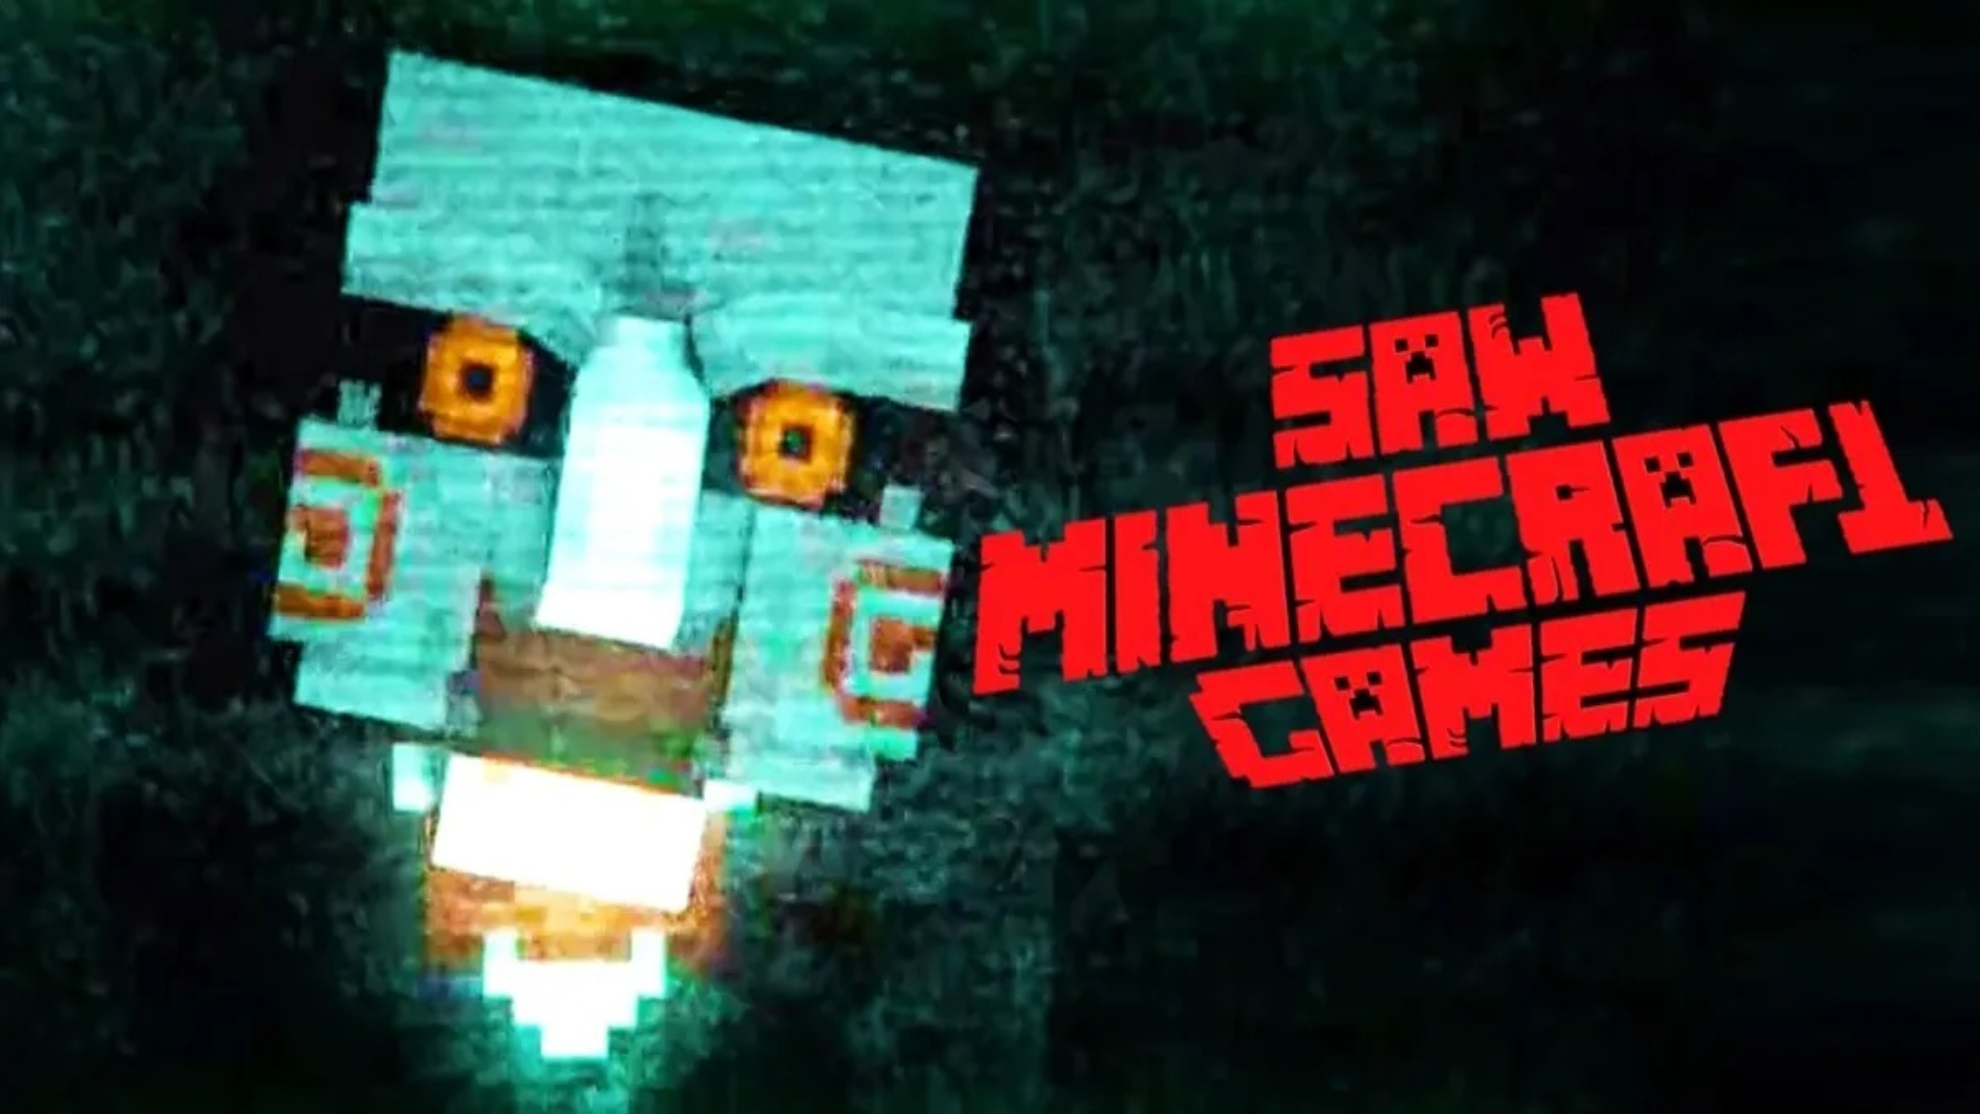 La reflexión del Saw Minecraft Games de AuronPlay sobre Twitch, YouTube y el streaming